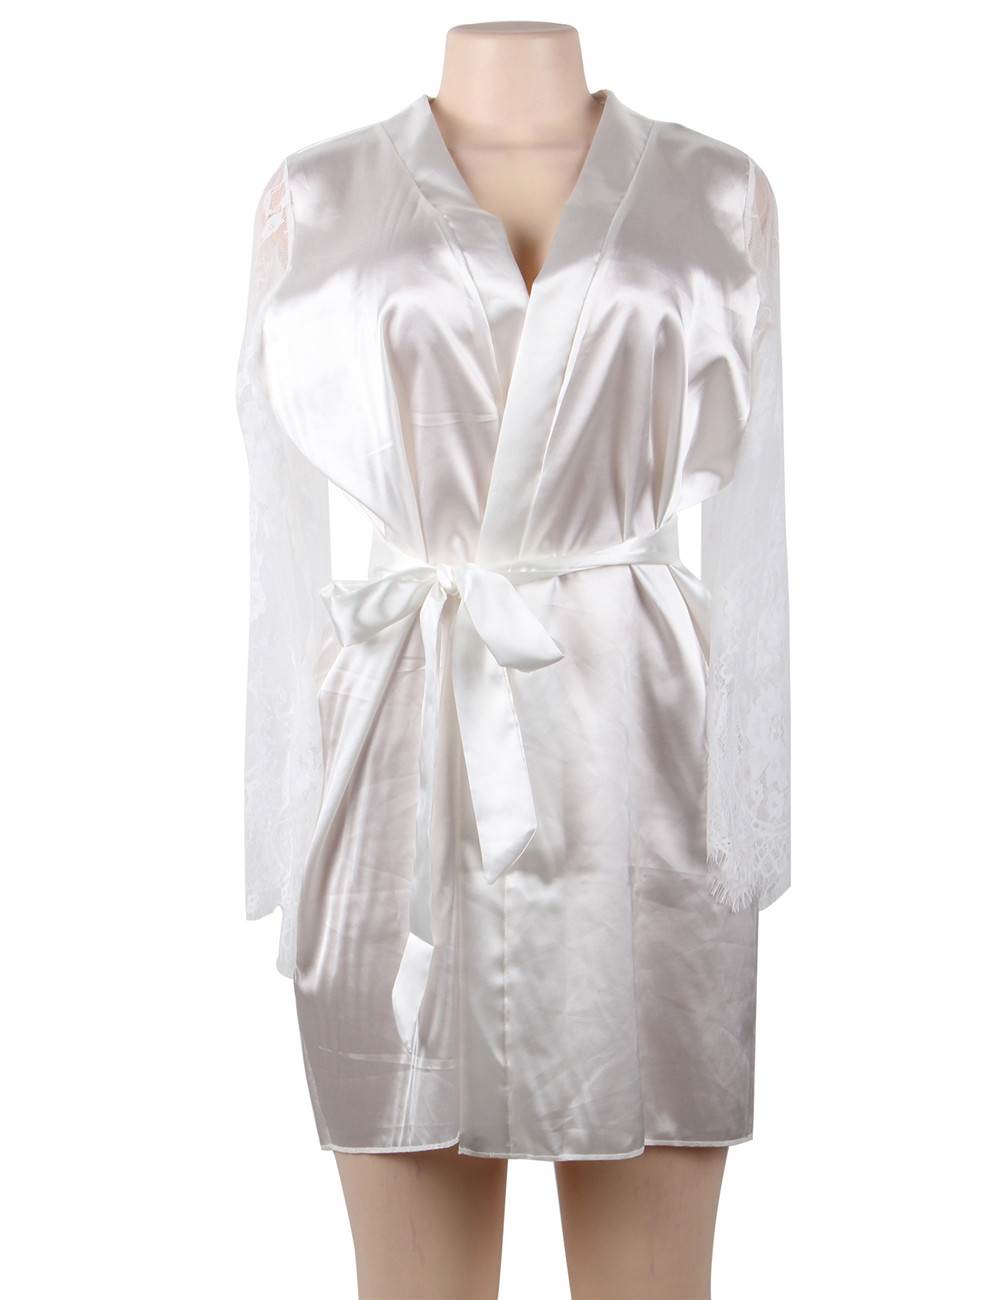 Romantic Nightwear Pajamas Wine Red Silk Satin R80556-3